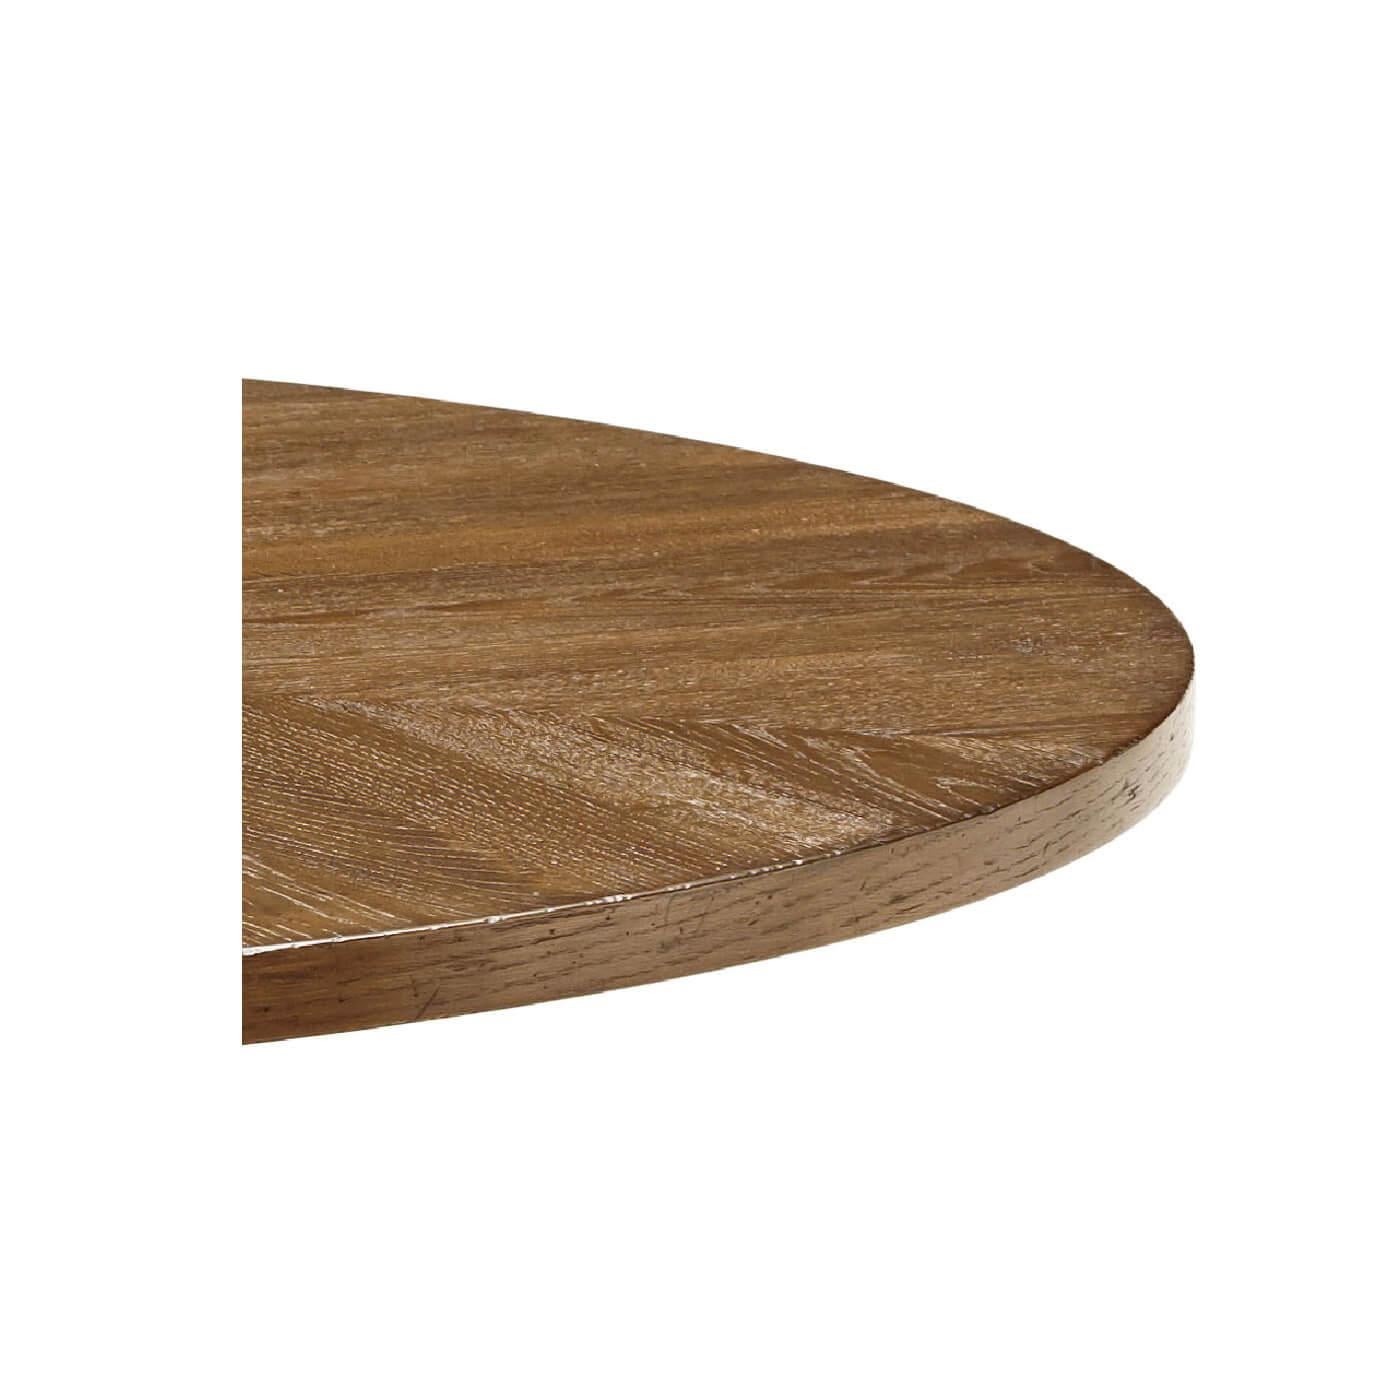 Une table à manger ronde en chêne rustique avec des pieds effilés. Cette belle table est dotée d'un plateau radial en parquet de chêne et repose sur un piédestal en forme de cage conique.

Montré en finition aube
DIMENSIONS
48